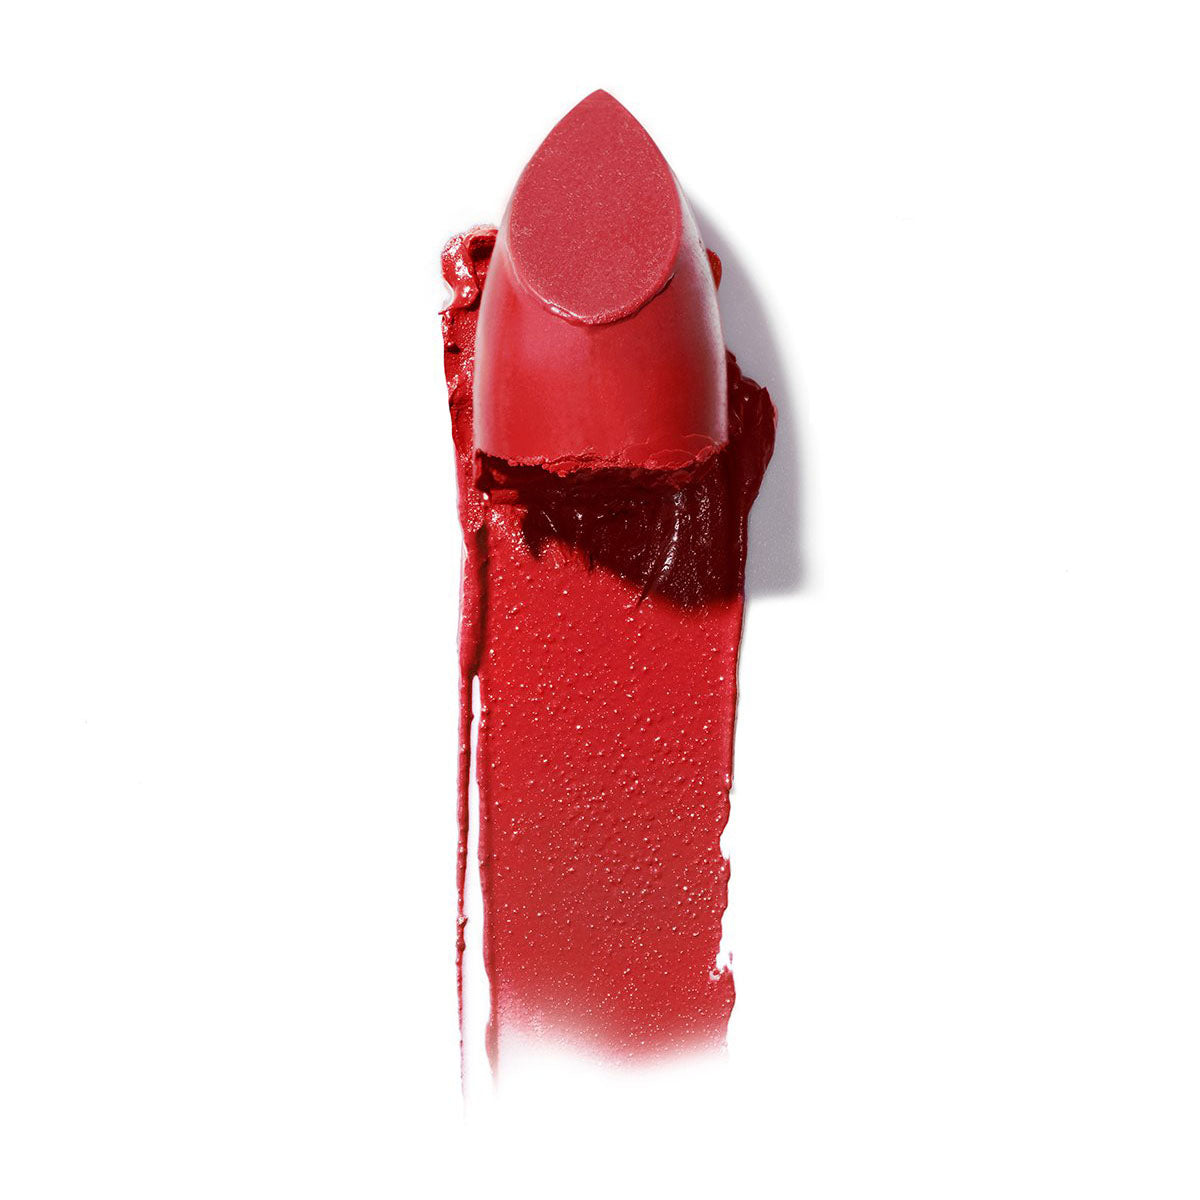 Alternate image of Color Block Lipstick in Grenadine